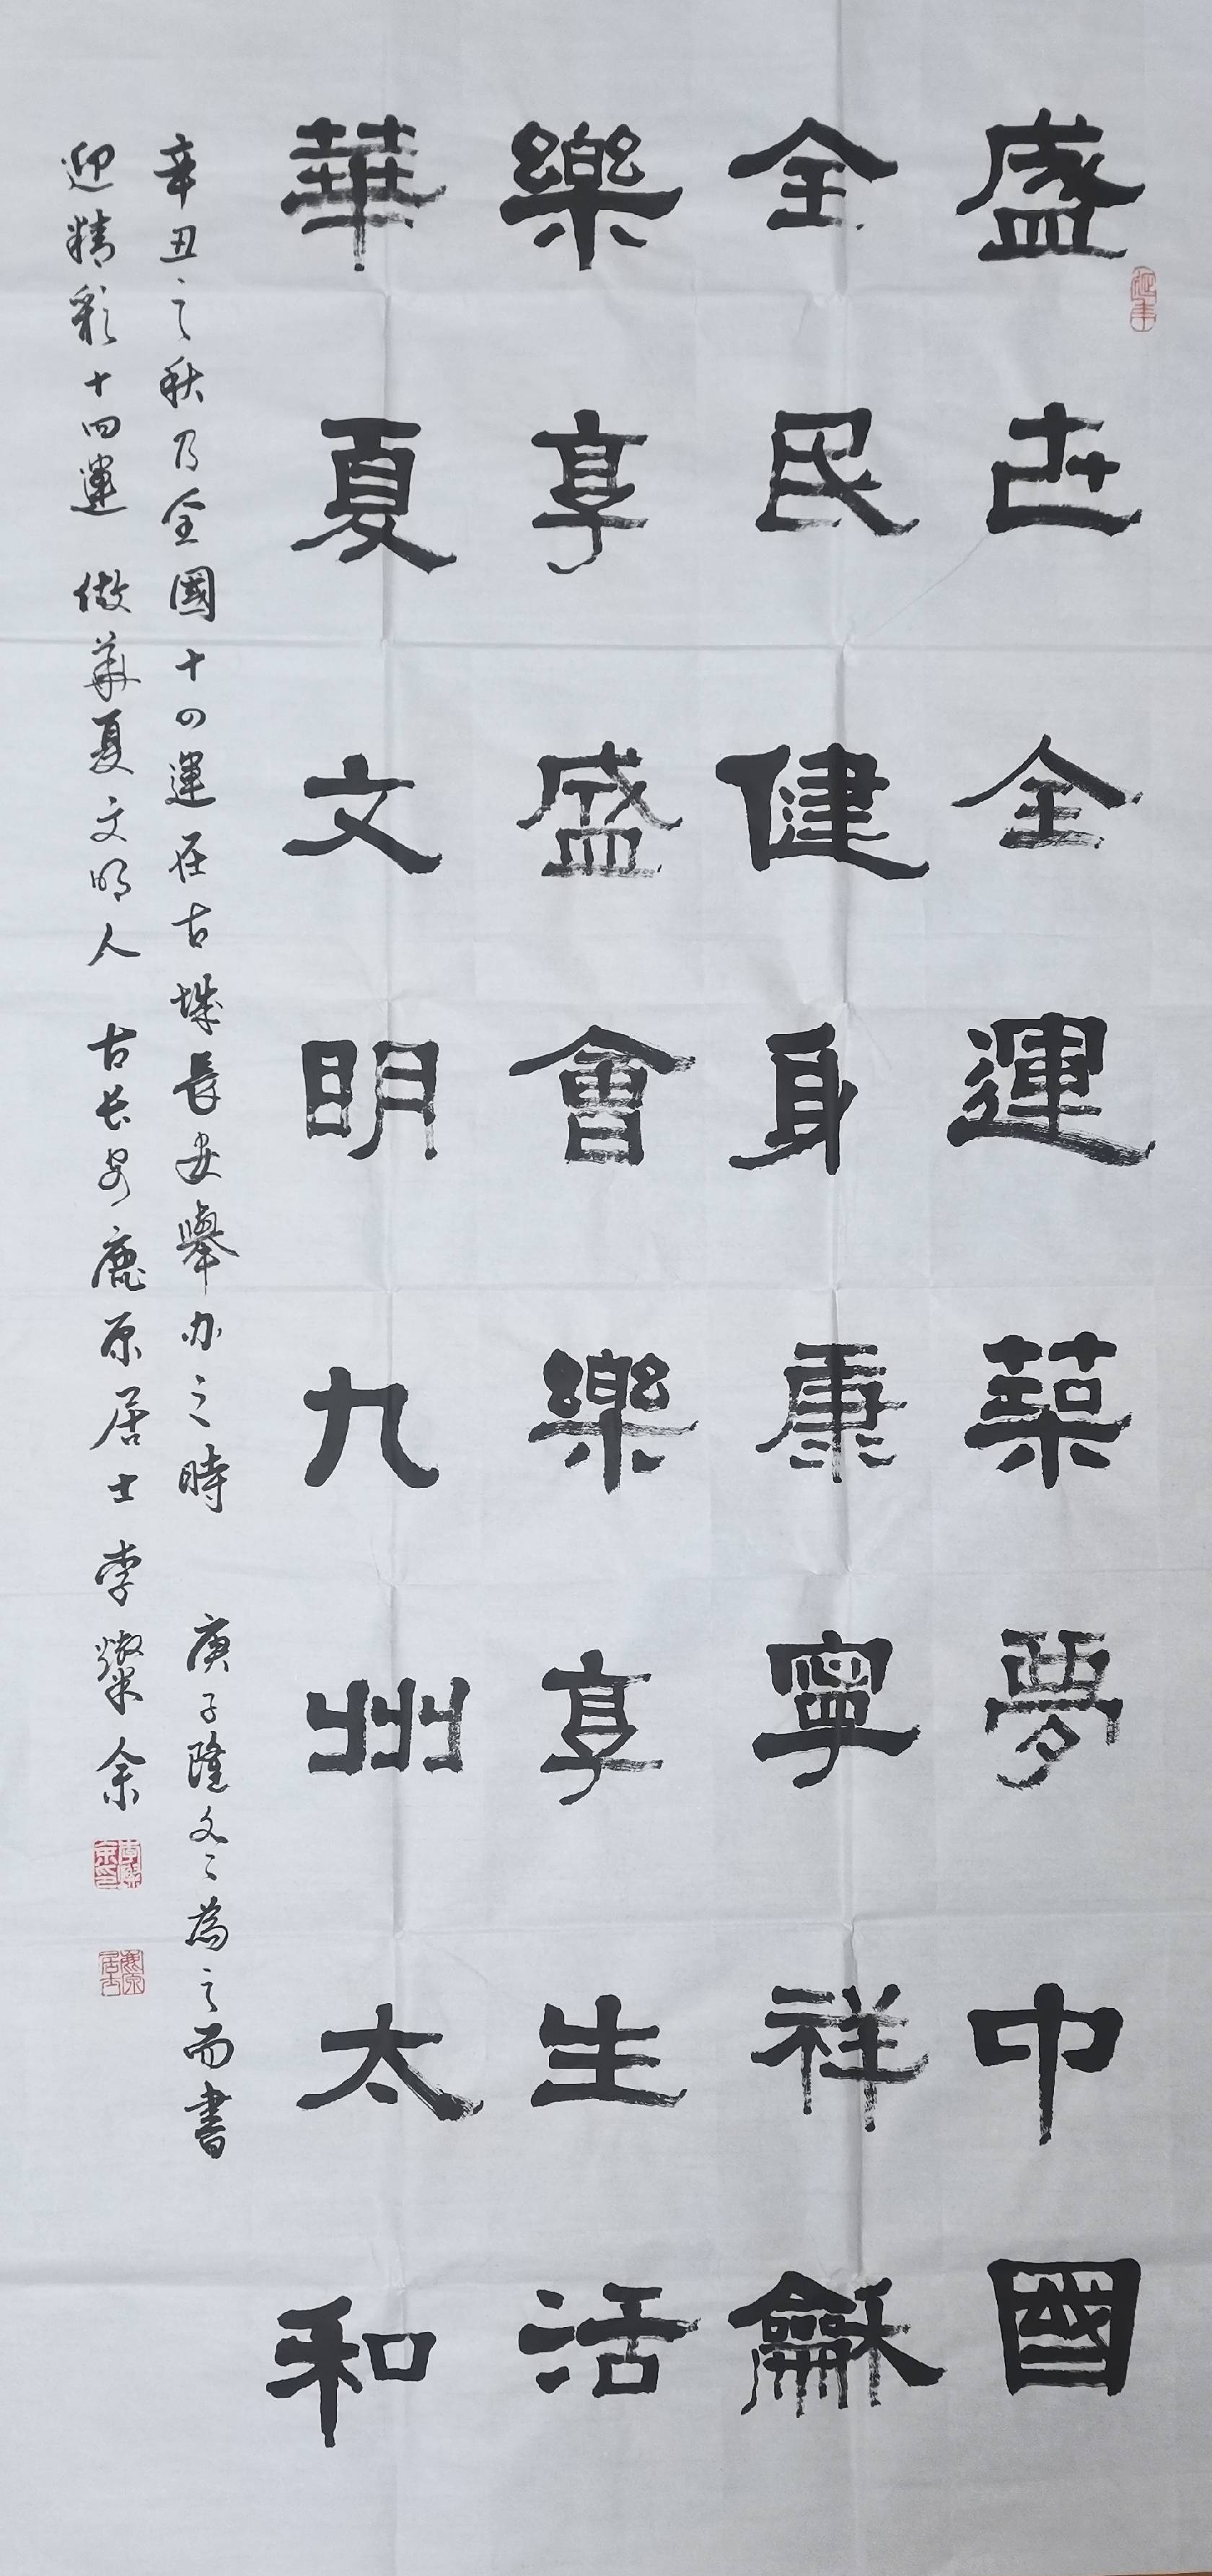 186,姓名:赵家旭,作品:软笔书法,区域:广东省.